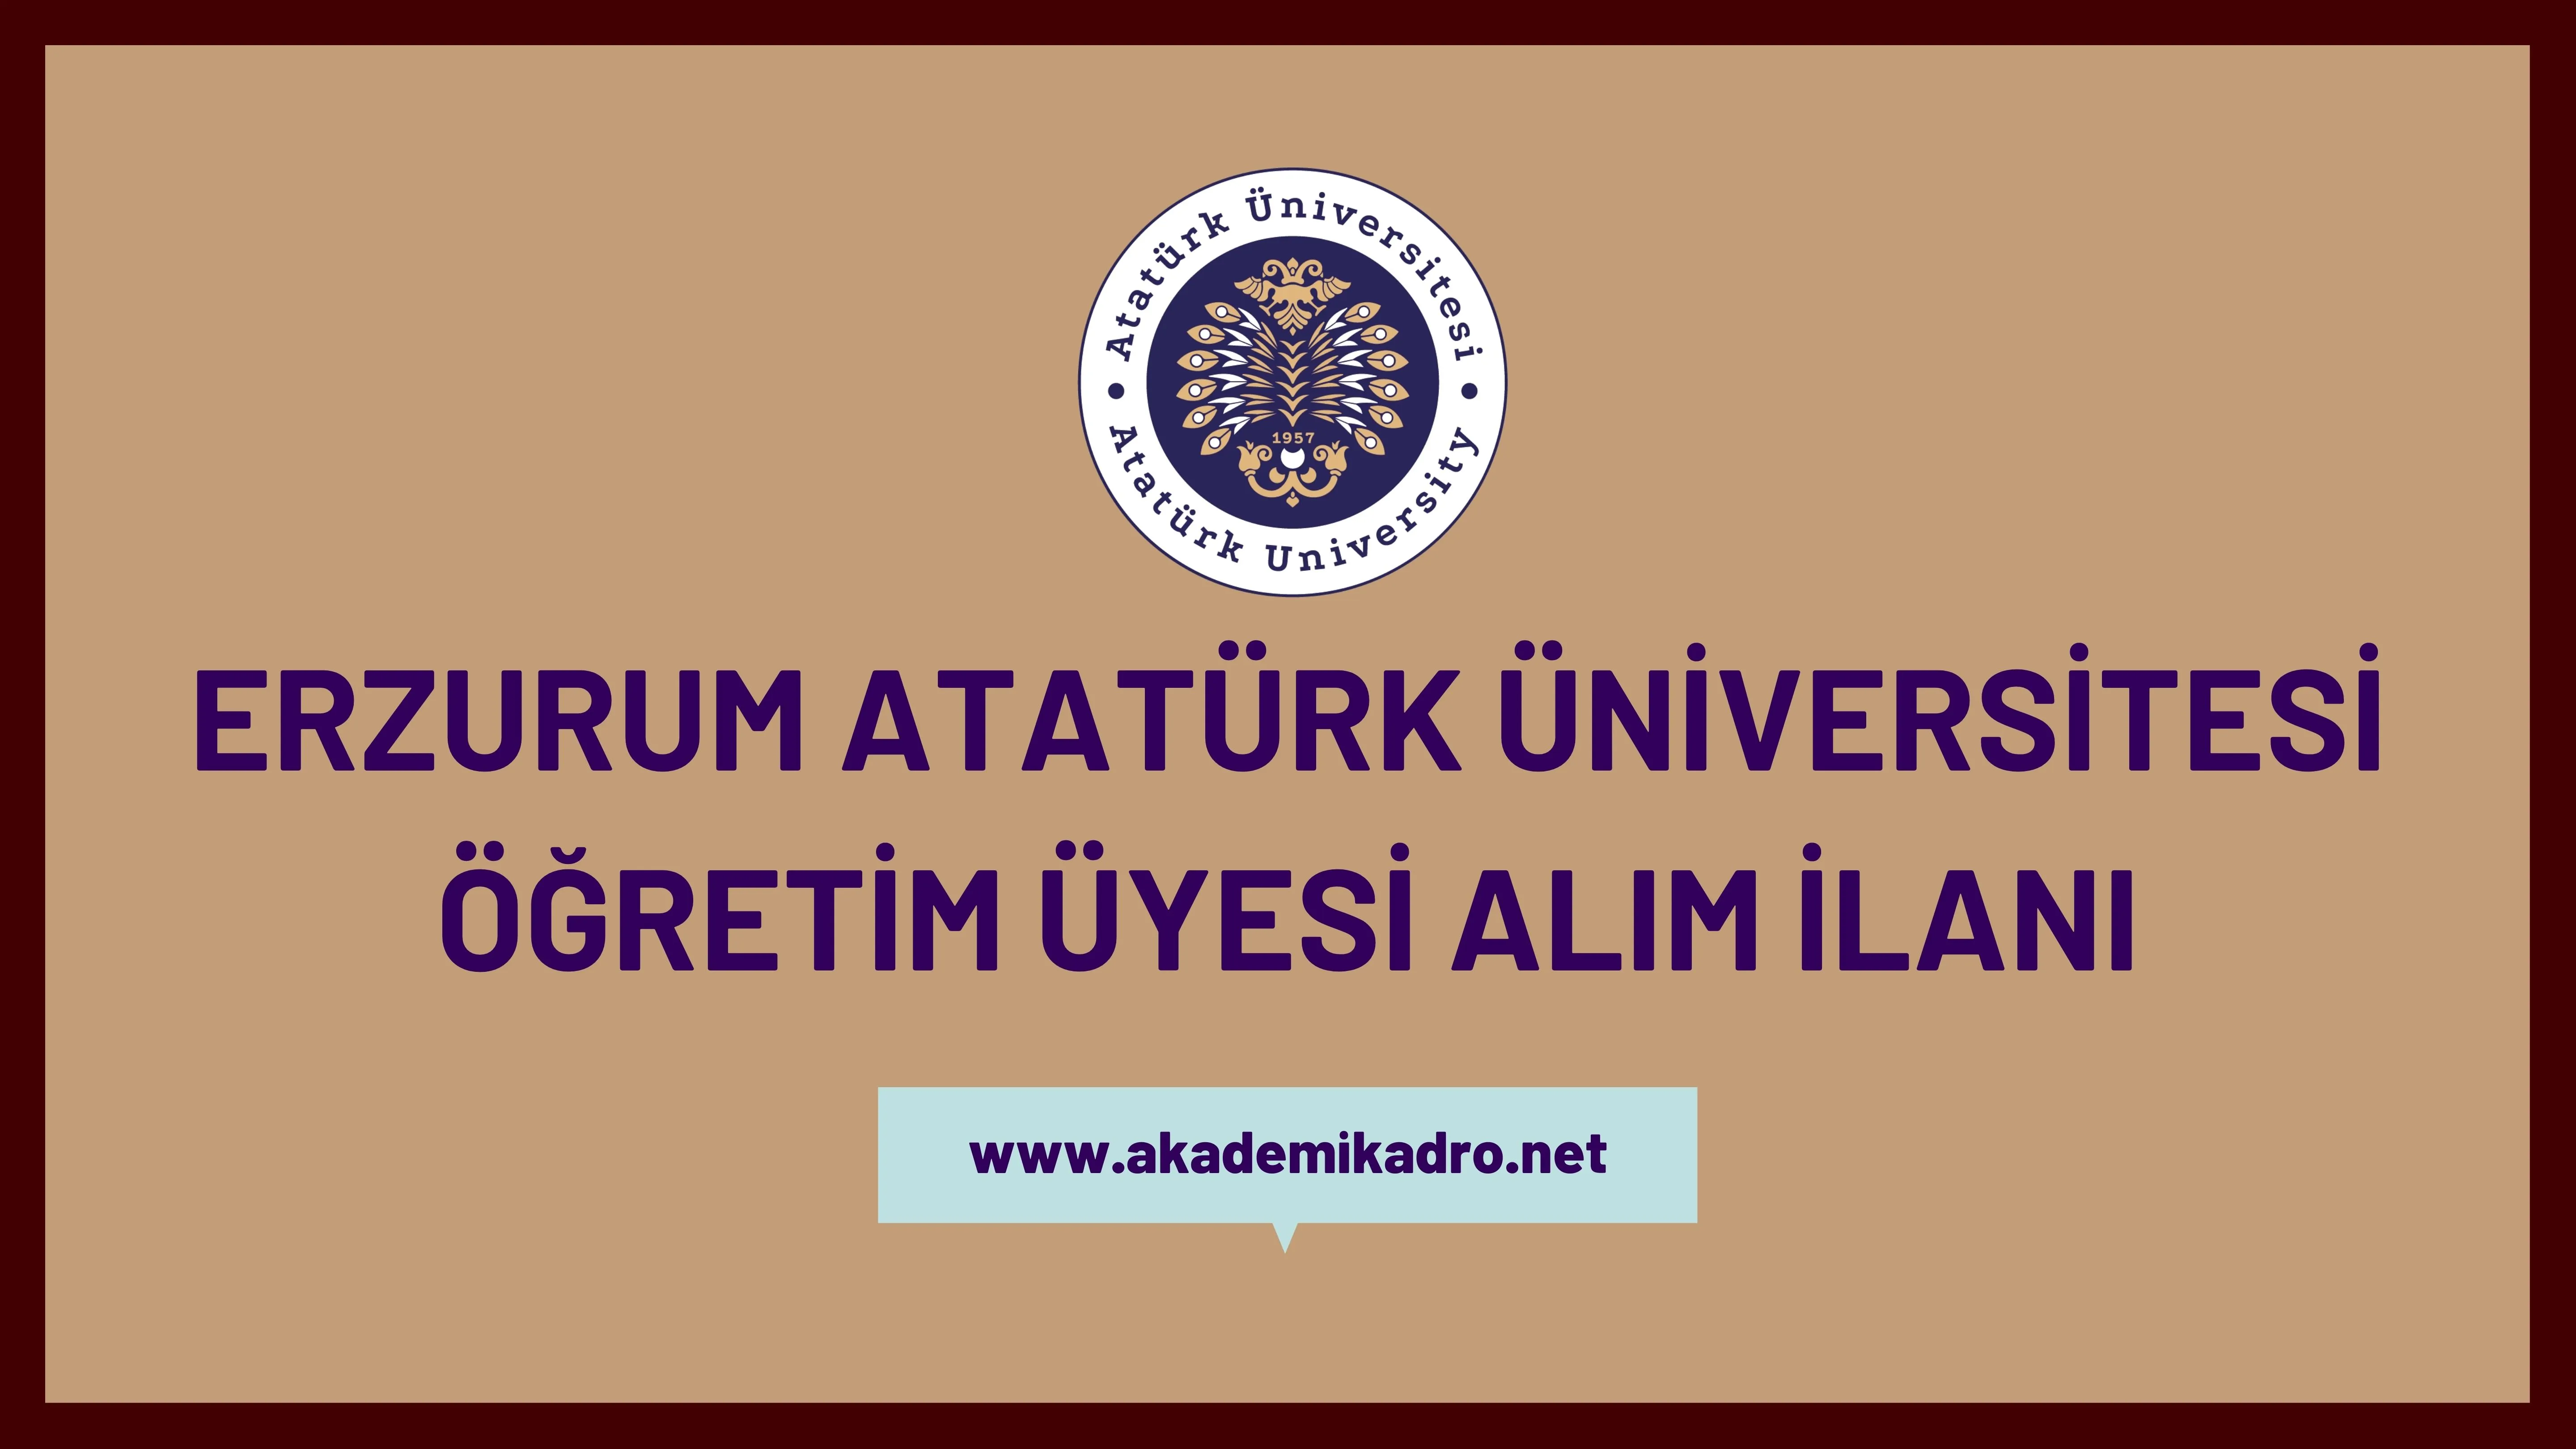 Atatürk Üniversitesi birçok alandan 92 akademik personel alacak. Son başvuru tarihi 21 Haziran 2023.